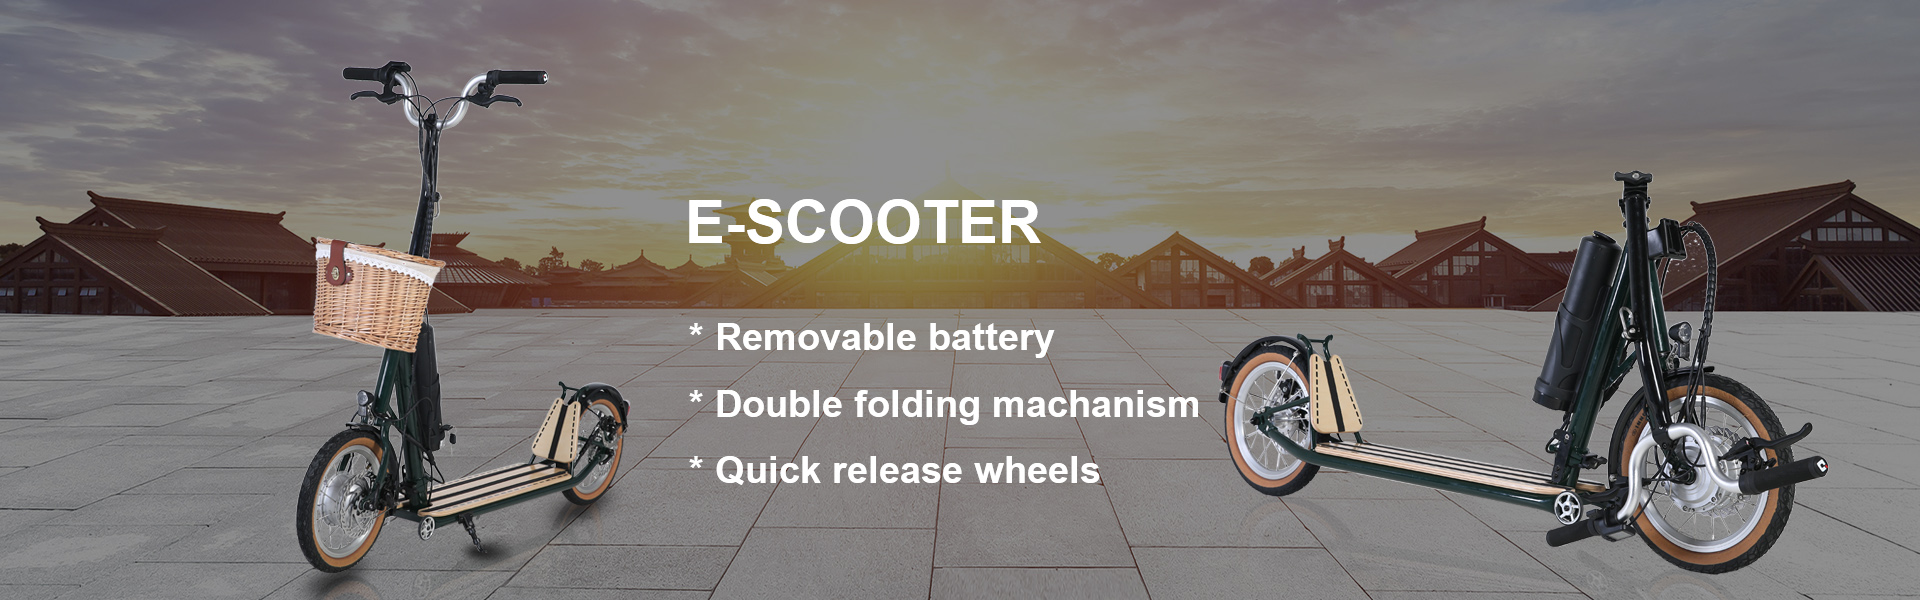 Elektrikli Scooter, Trottinette Électrique, scooter électrique,SHENZHEN HAPPY-GO INTELLIGENT TECHNOLOGY CO.,LTD